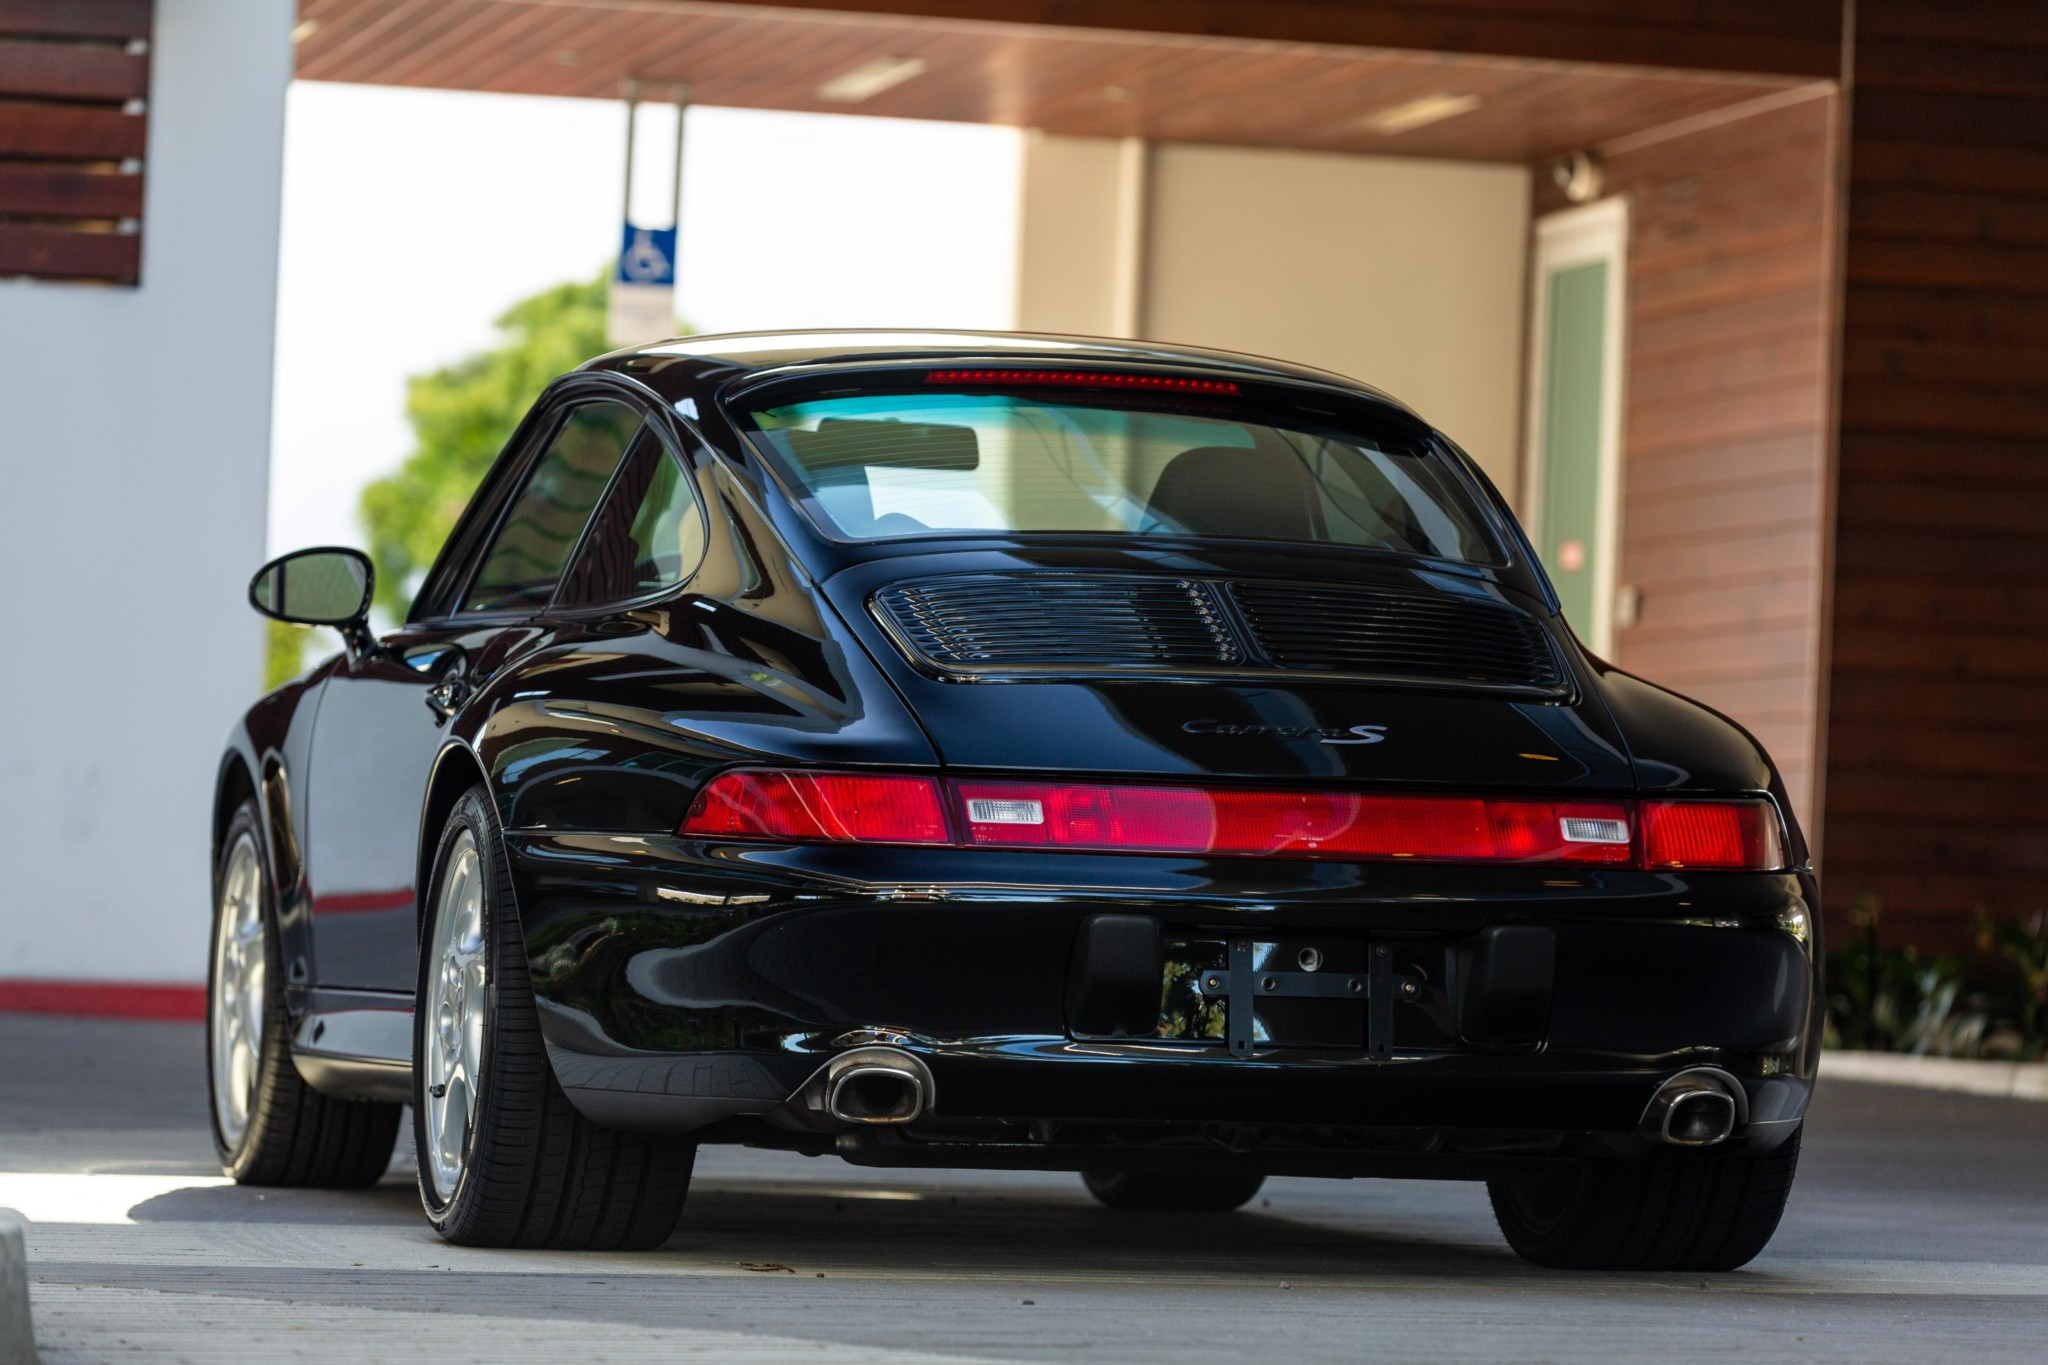 A 1997 black Porsche 993.